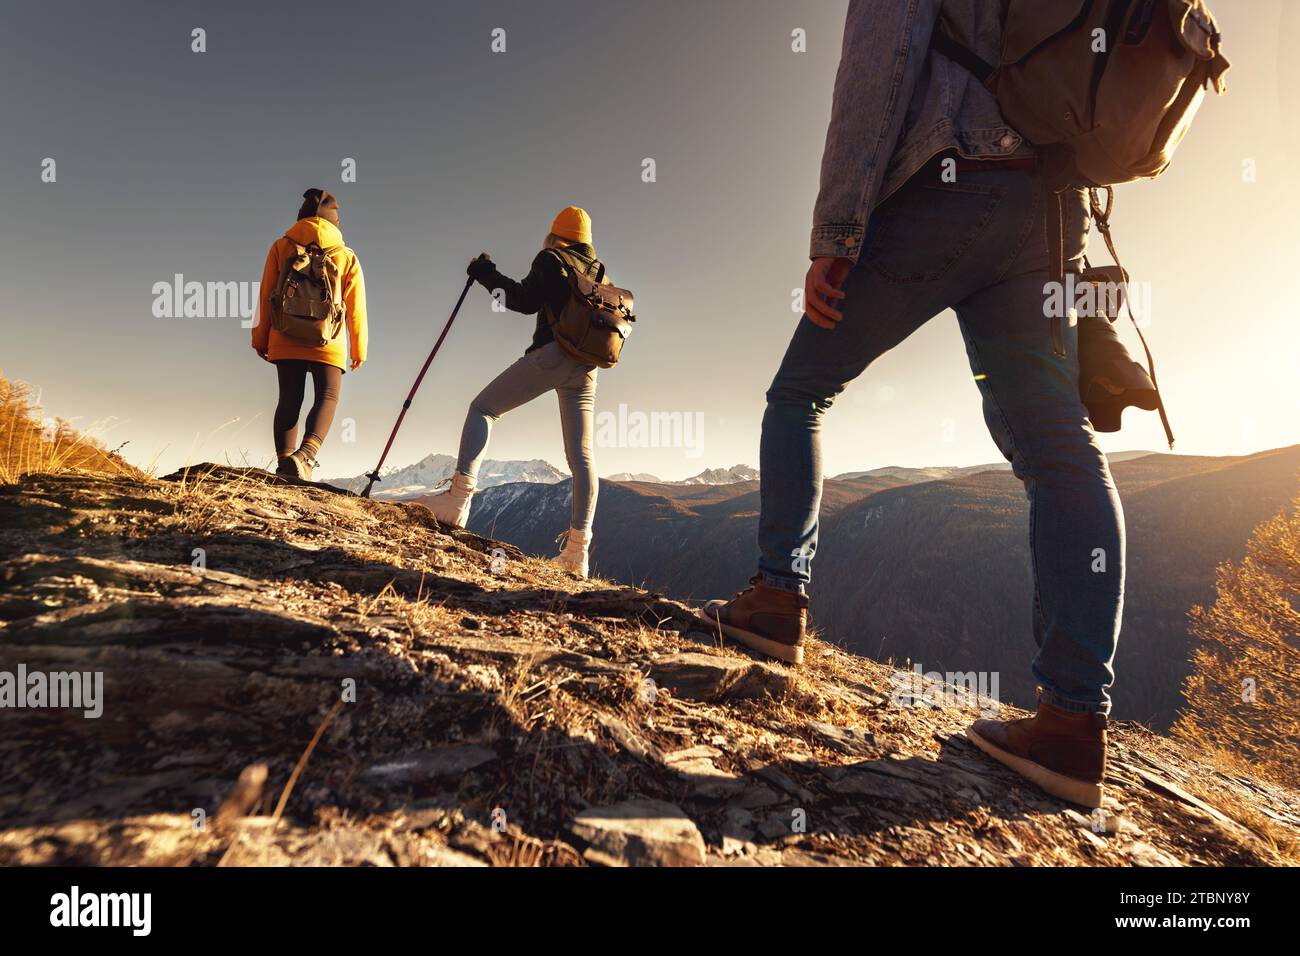 Drei junge Touristen oder Wanderer mit Rucksäcken stehen am Aussichtspunkt und blicken auf den Sonnenuntergang Stockfoto